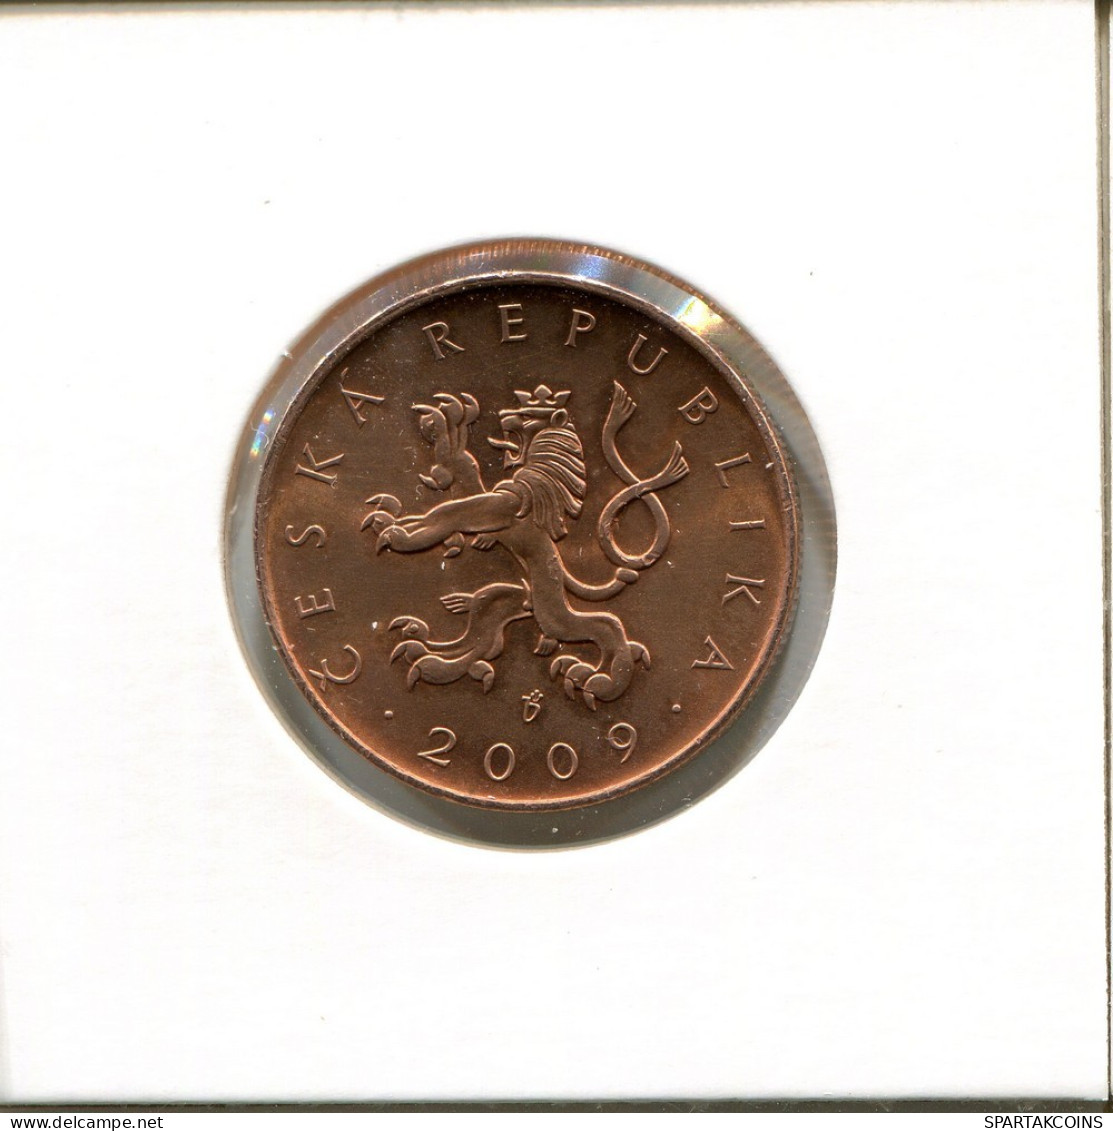 10 KORUN 2009 REPÚBLICA CHECA CZECH REPUBLIC Moneda #AP782.2.E.A - Tchéquie